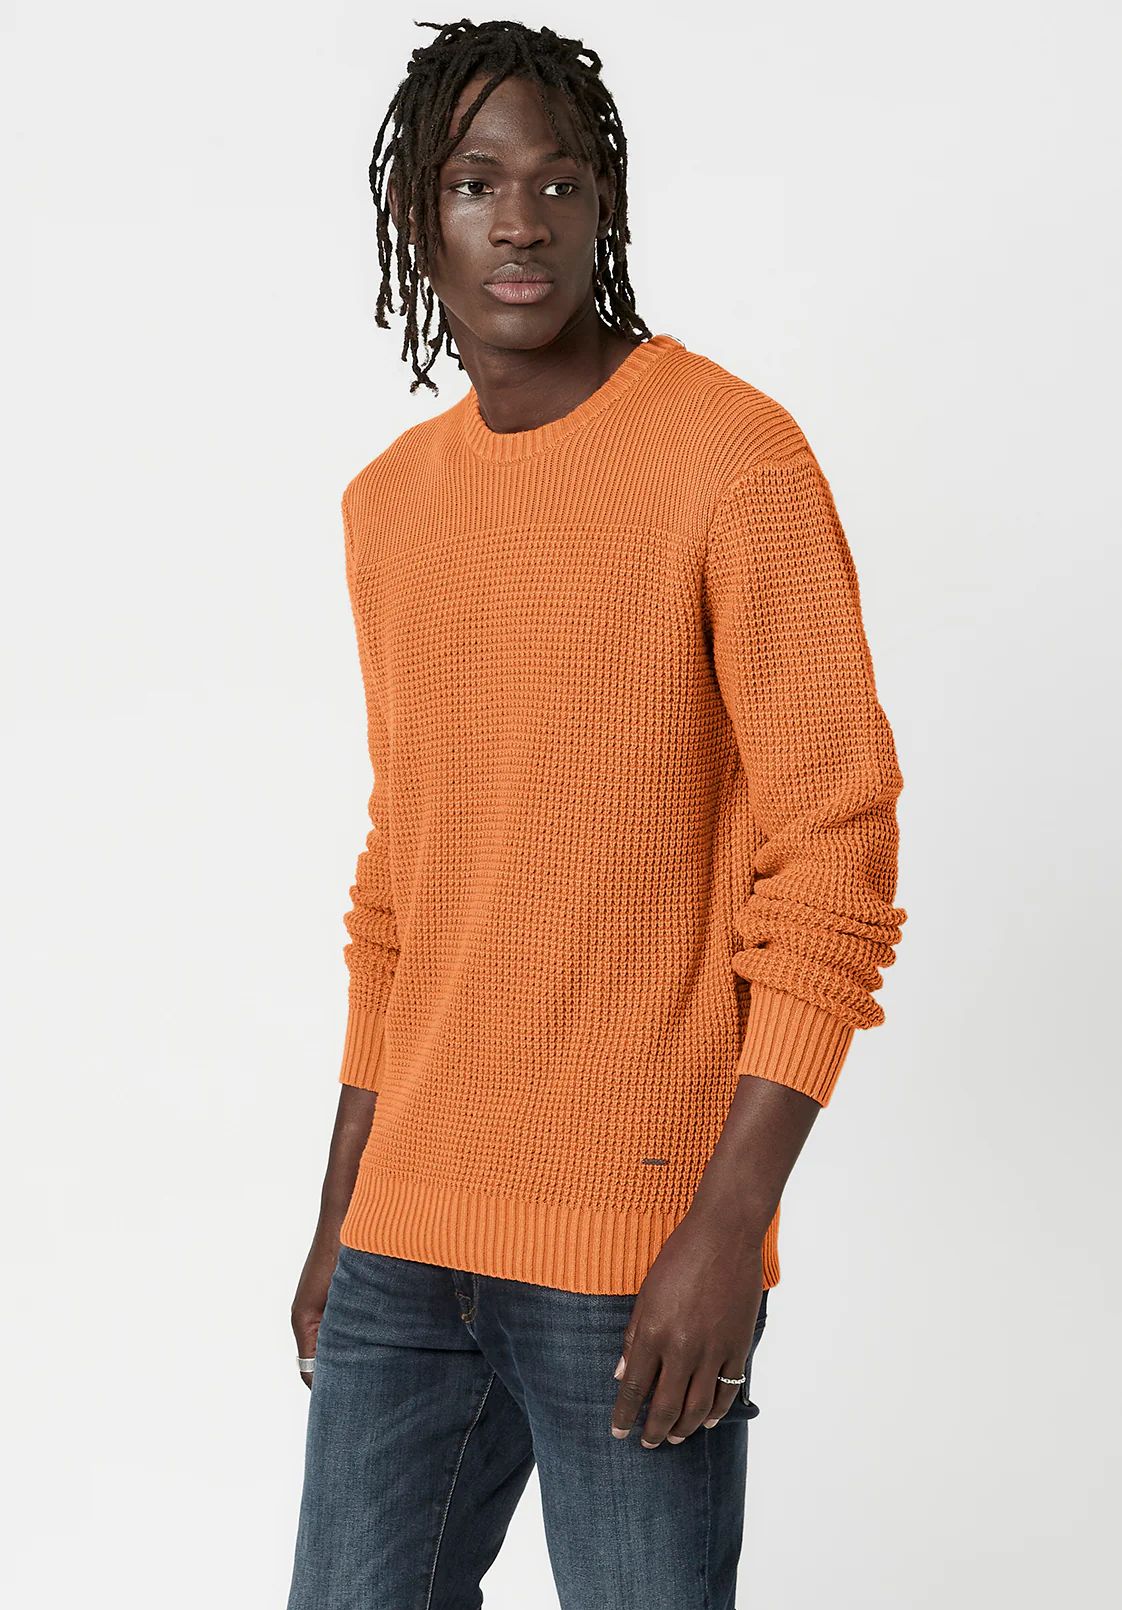 Textured Knit Washy Sweater - BM23793 | Buffalo David Bitton